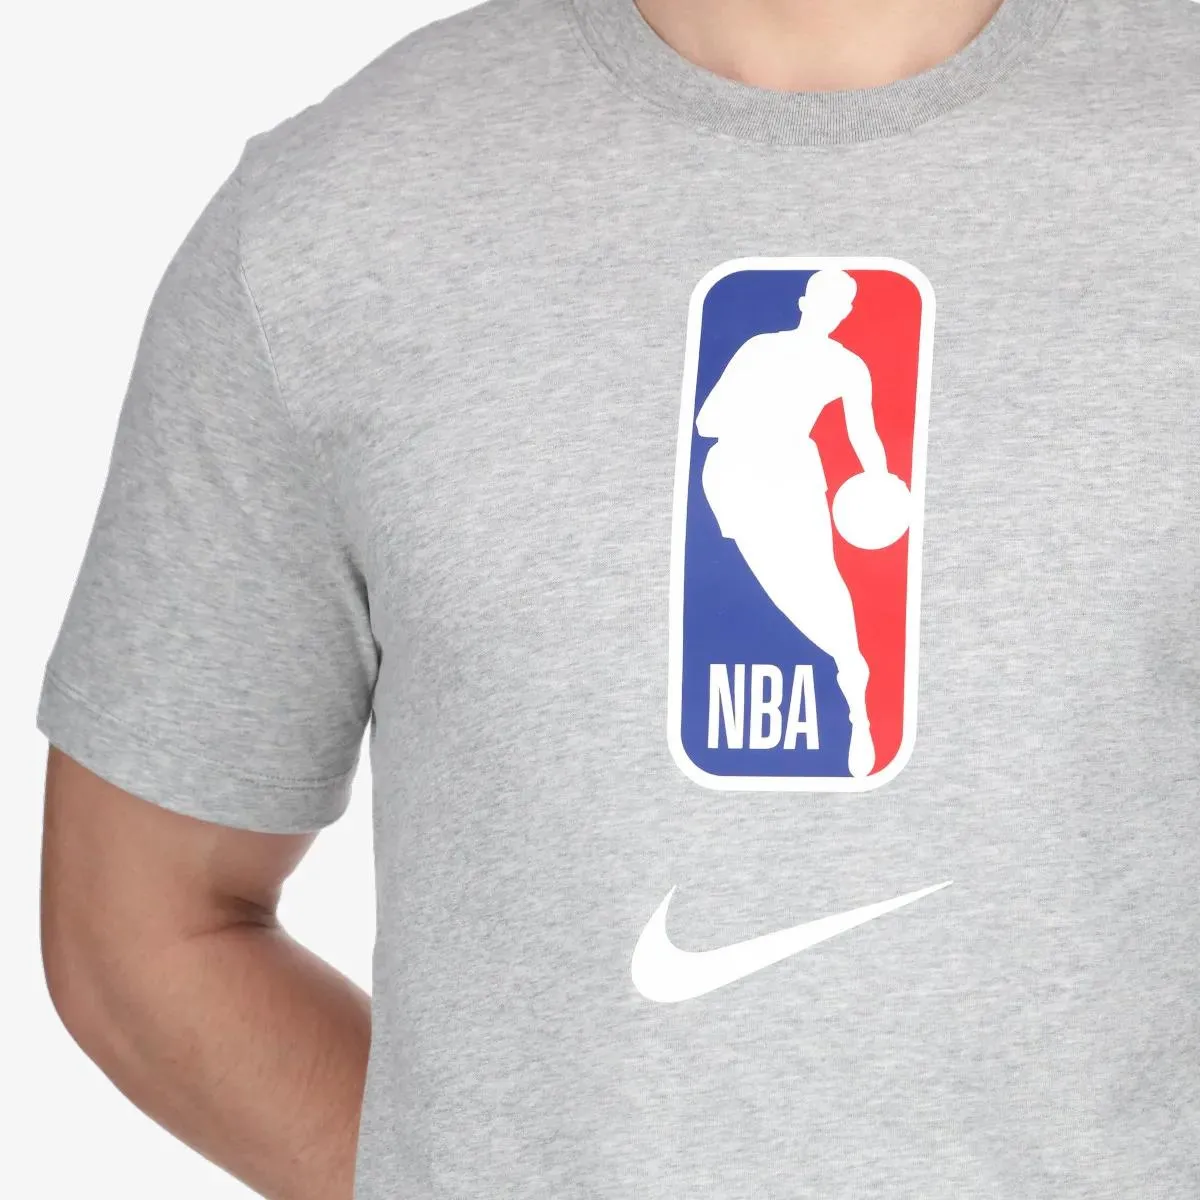 Nike T-shirt Team 31 